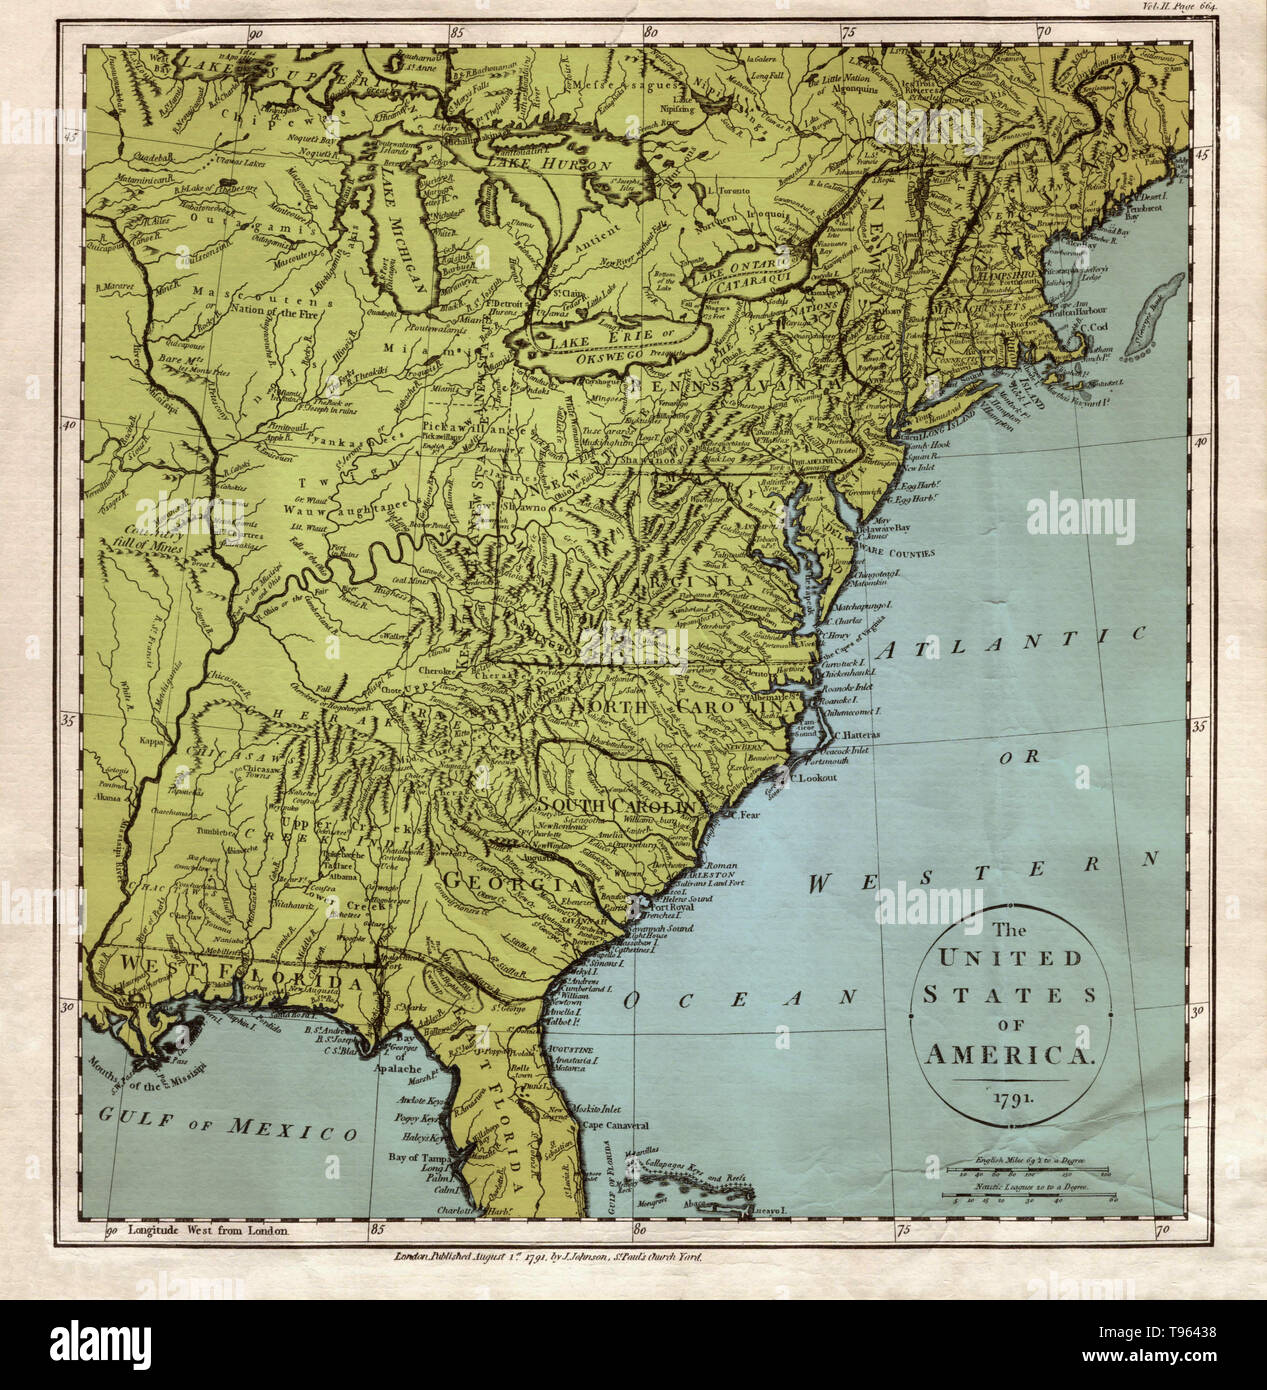 Une carte des États-Unis d'Amérique, 1791, avec l'océan Atlantique ou de l'Ouest 'étiquette', ainsi que 'l'ouest de la Floride." créés par J. Johnson, Saint Paul's Church Yard. Cette image a été améliorée couleur. Banque D'Images